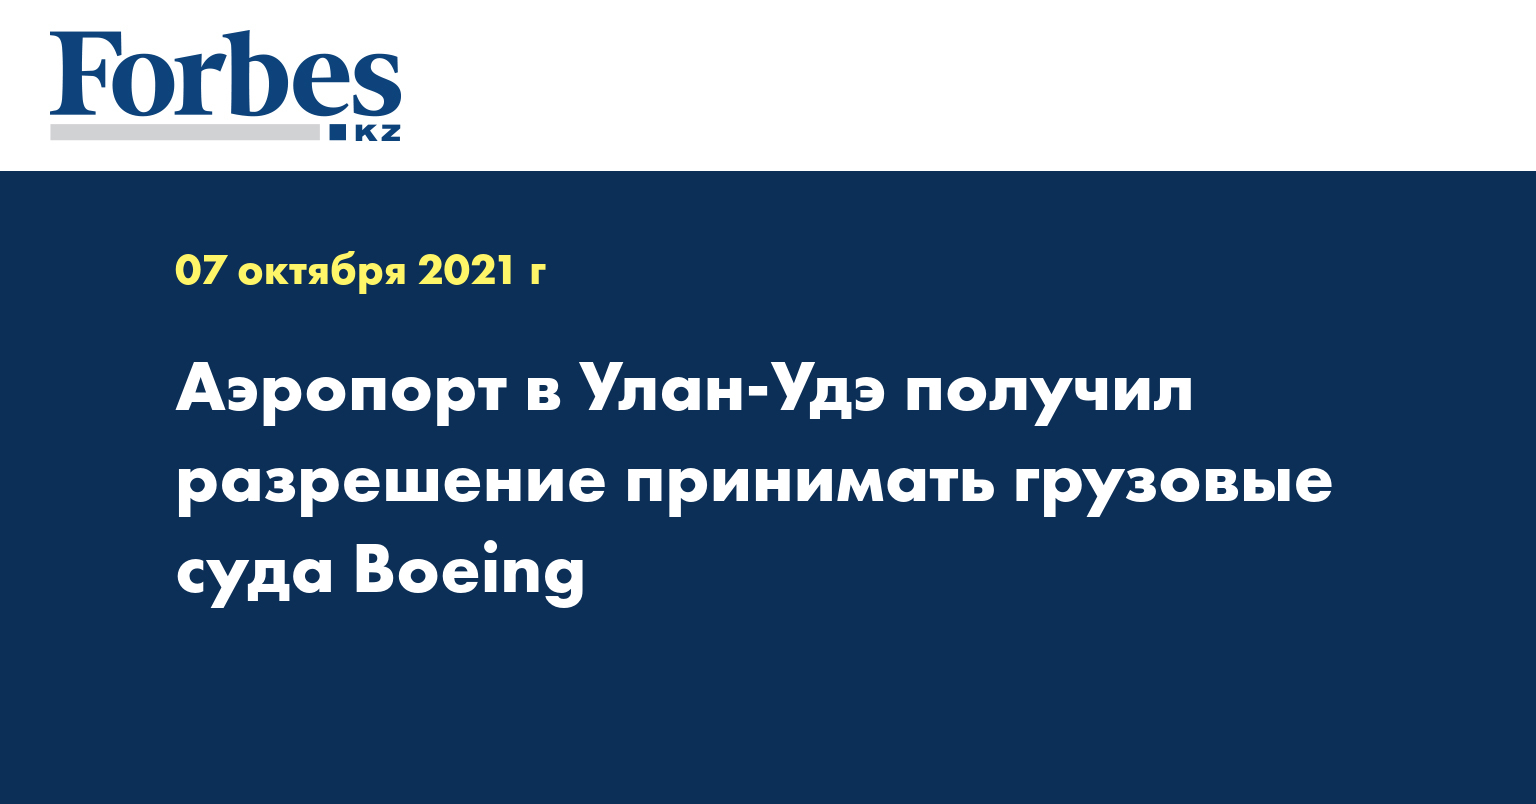 Аэропорт в Улан-Удэ получил разрешение принимать грузовые суда Boeing 